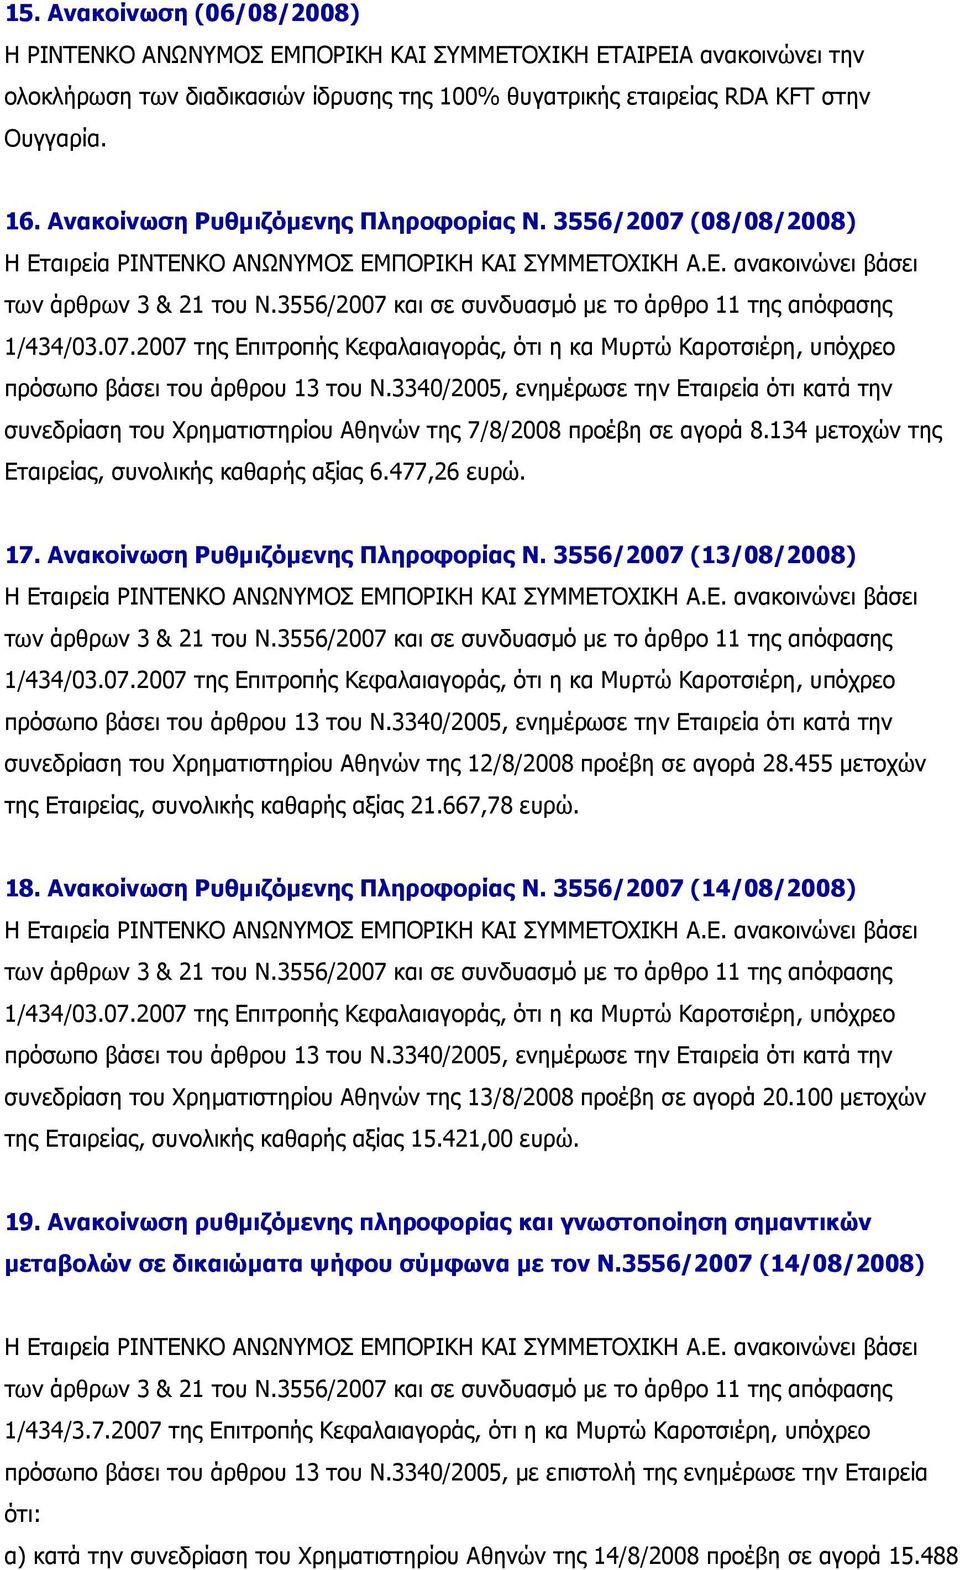 Ανακοίνωση Ρυθµιζόµενης Πληροφορίας Ν. 3556/2007 (13/08/2008) συνεδρίαση του Χρηµατιστηρίου Αθηνών της 12/8/2008 προέβη σε αγορά 28.455 µετοχών της Εταιρείας, συνολικής καθαρής αξίας 21.667,78 ευρώ.